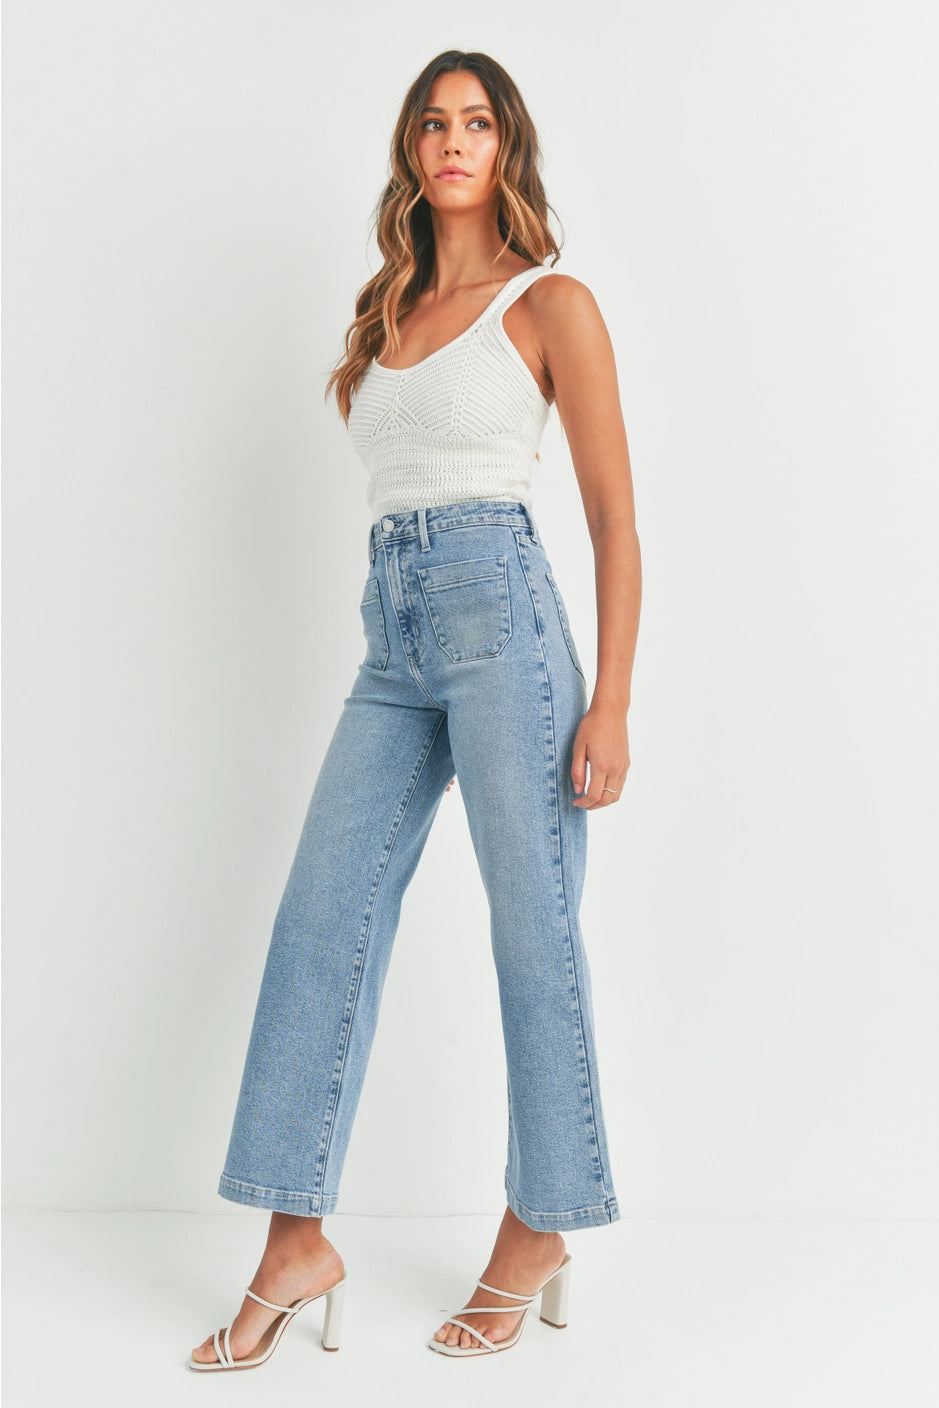 Marshfield Jeans